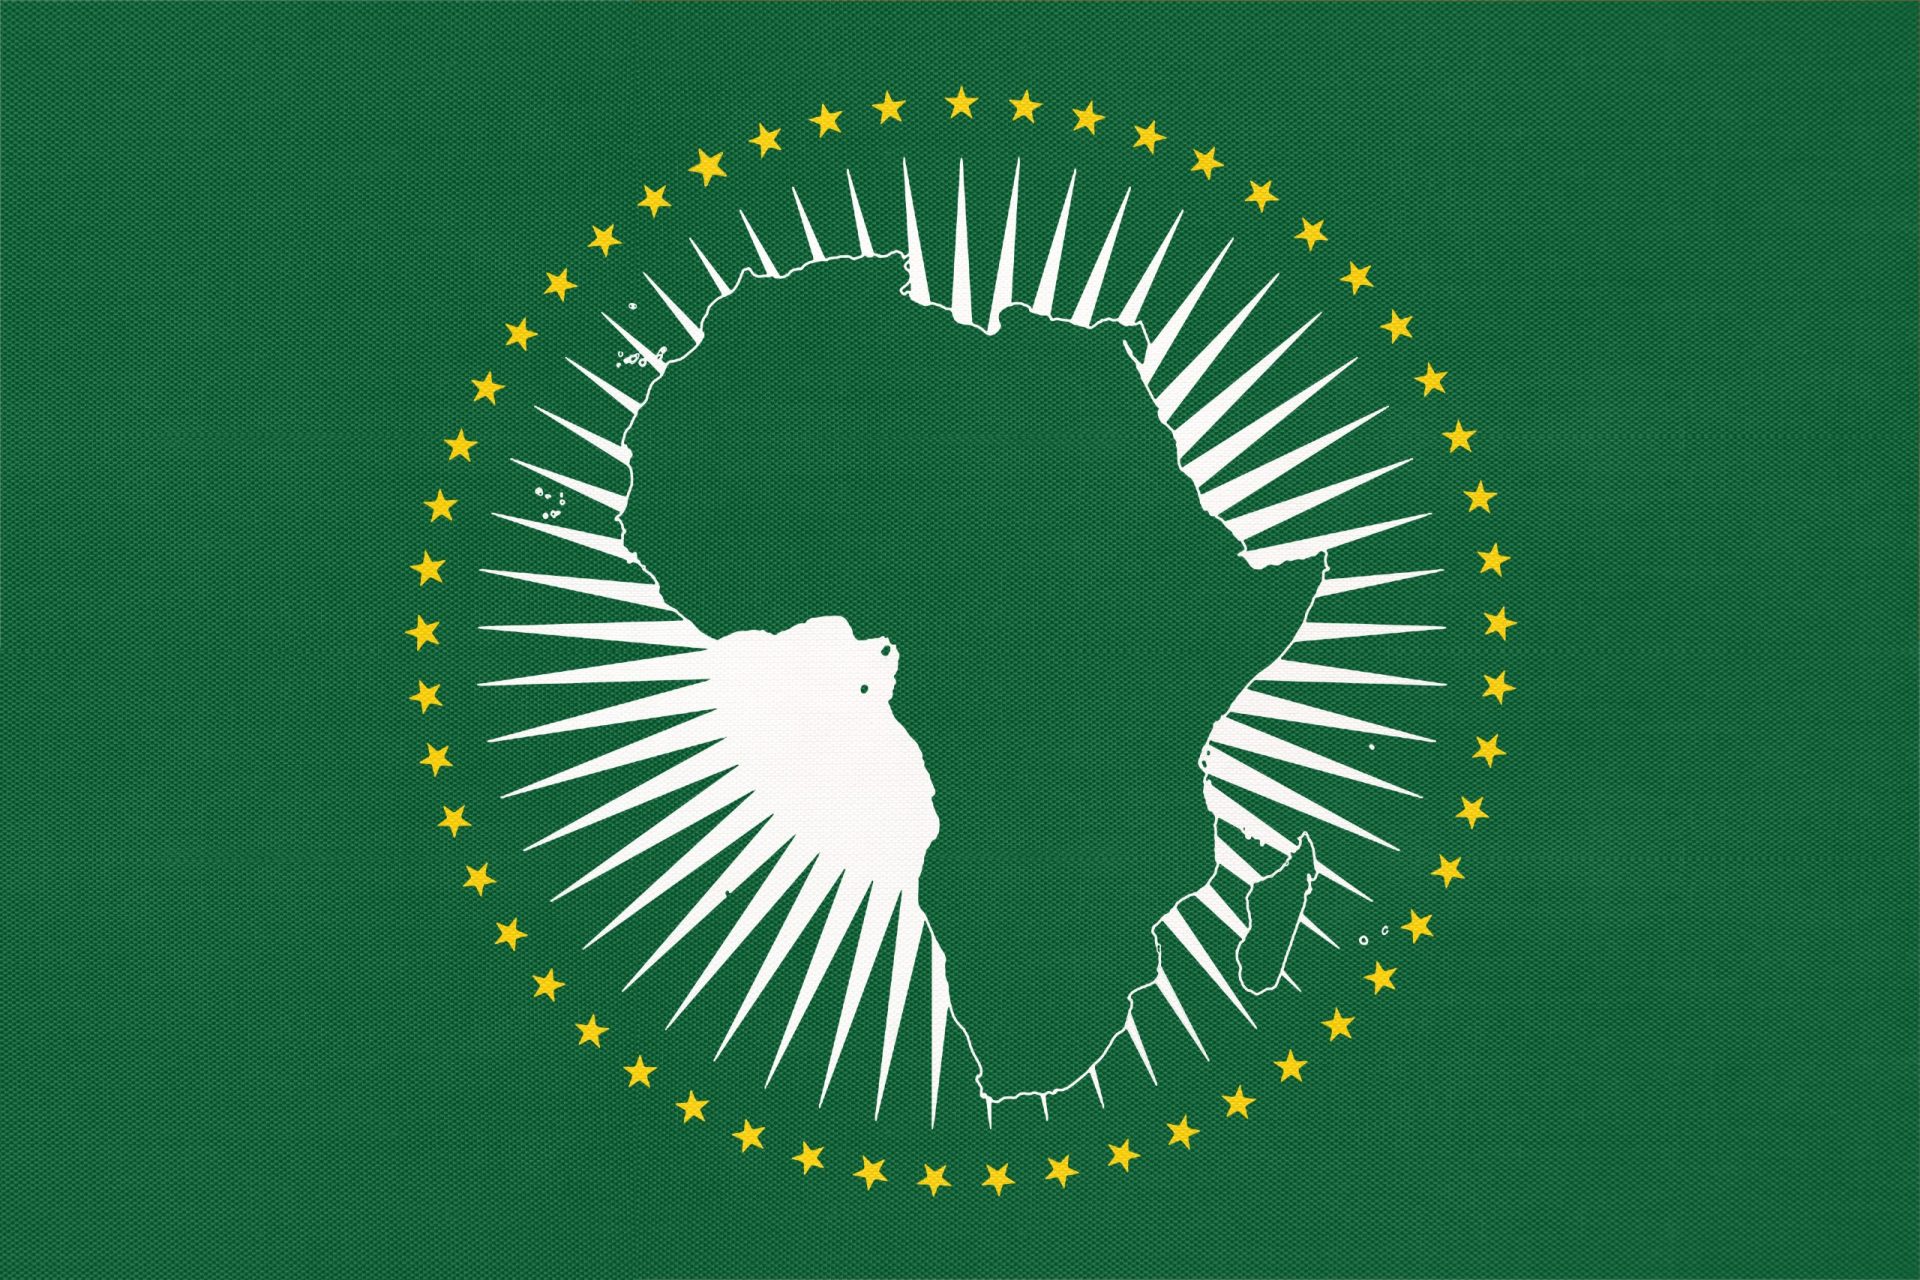 Adesão da União Africana ao G20 traz resultados positivos para o Mundo